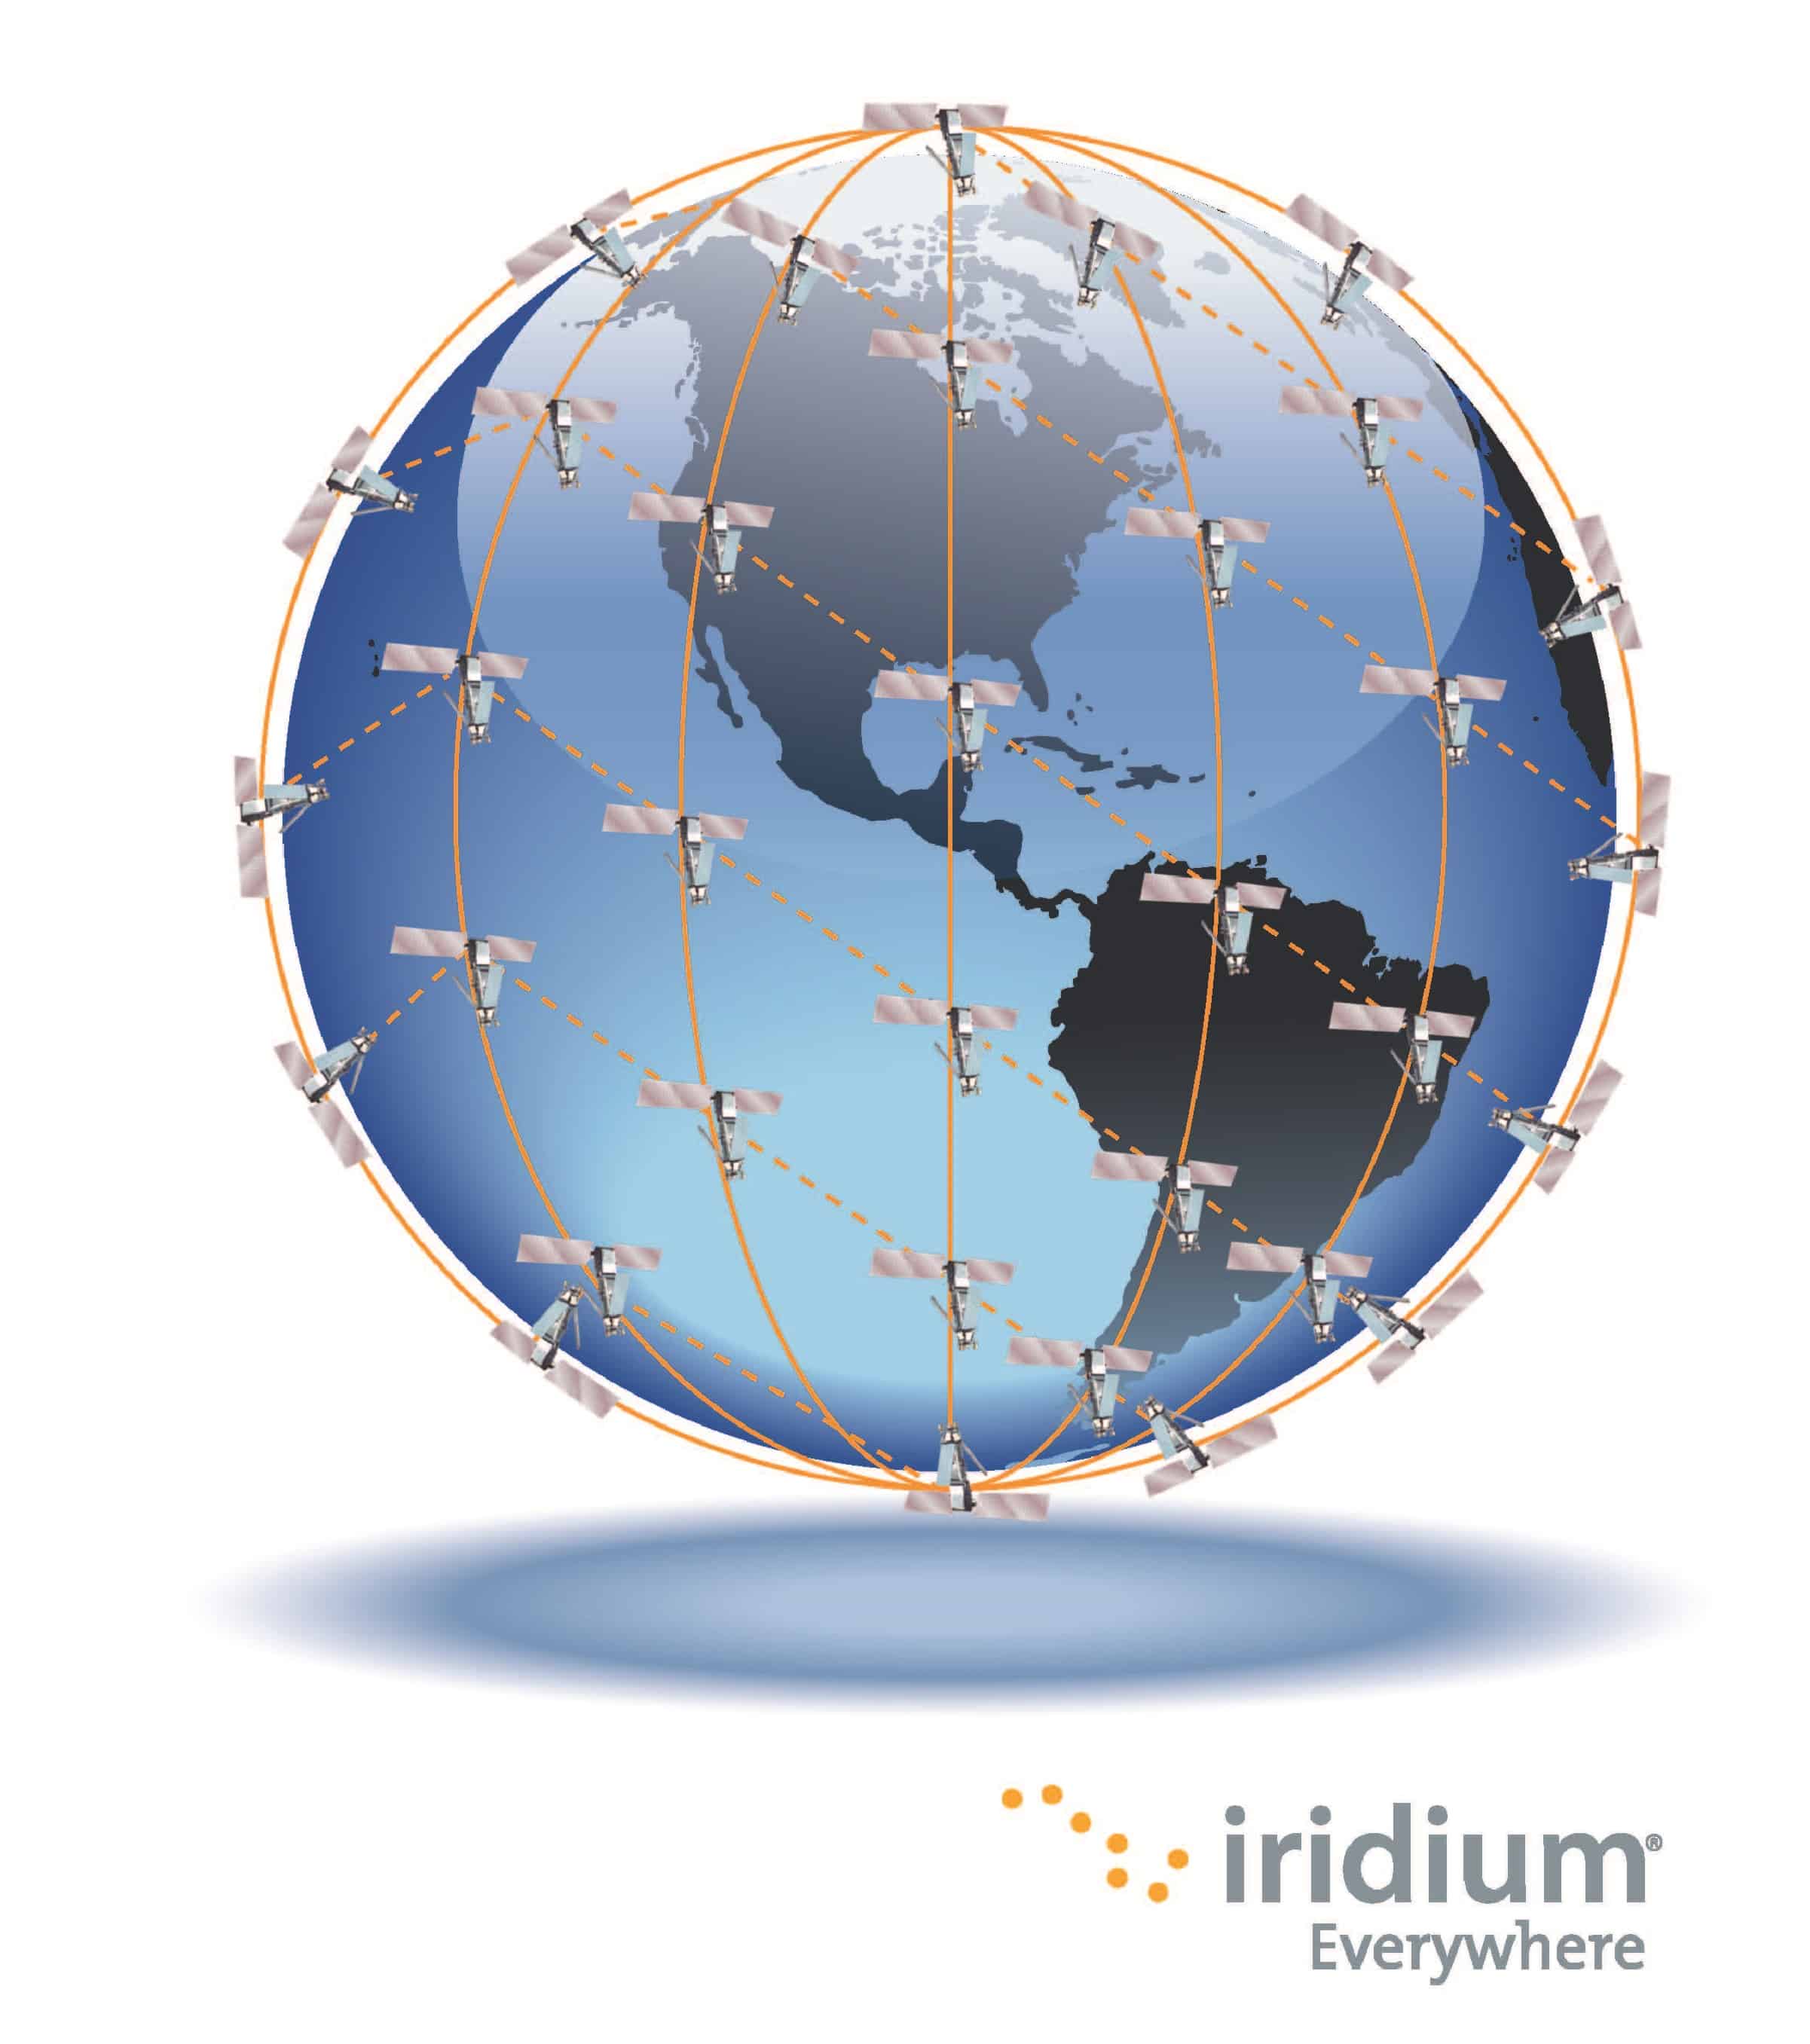 Iridium Satellite Coverage Map